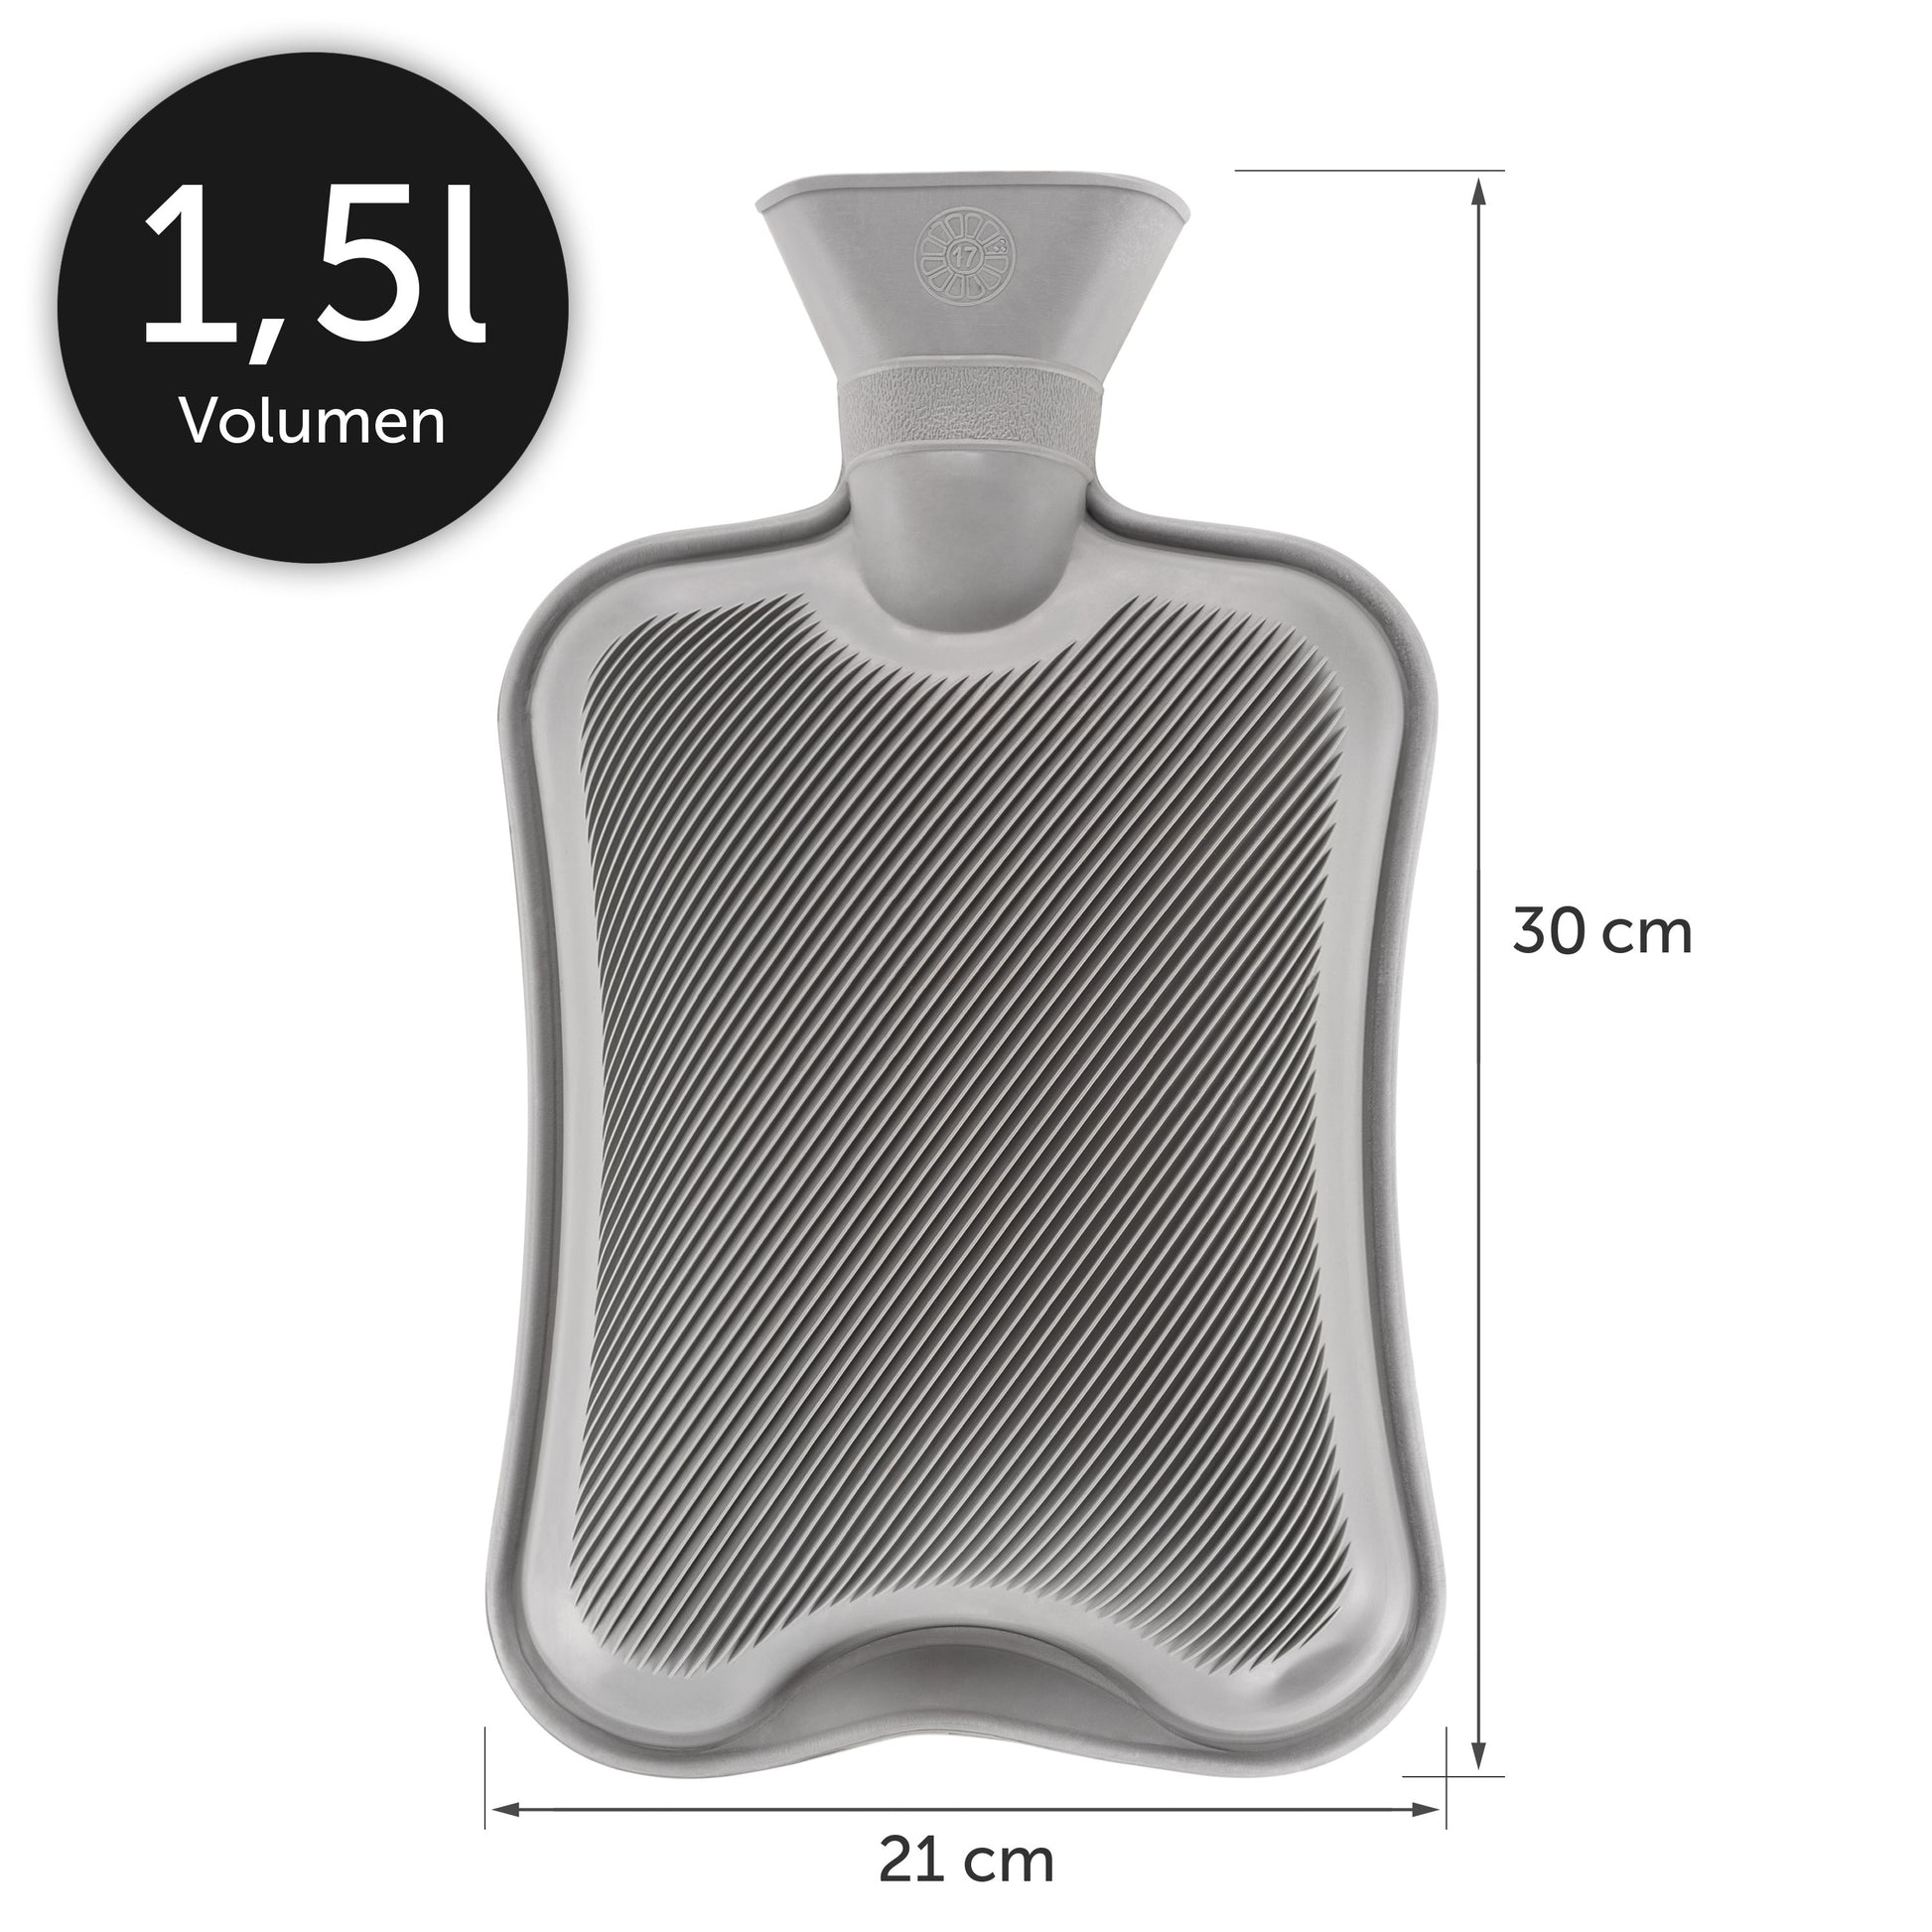 Graue Wärmeflasche Maße 30x21cm und 1,L